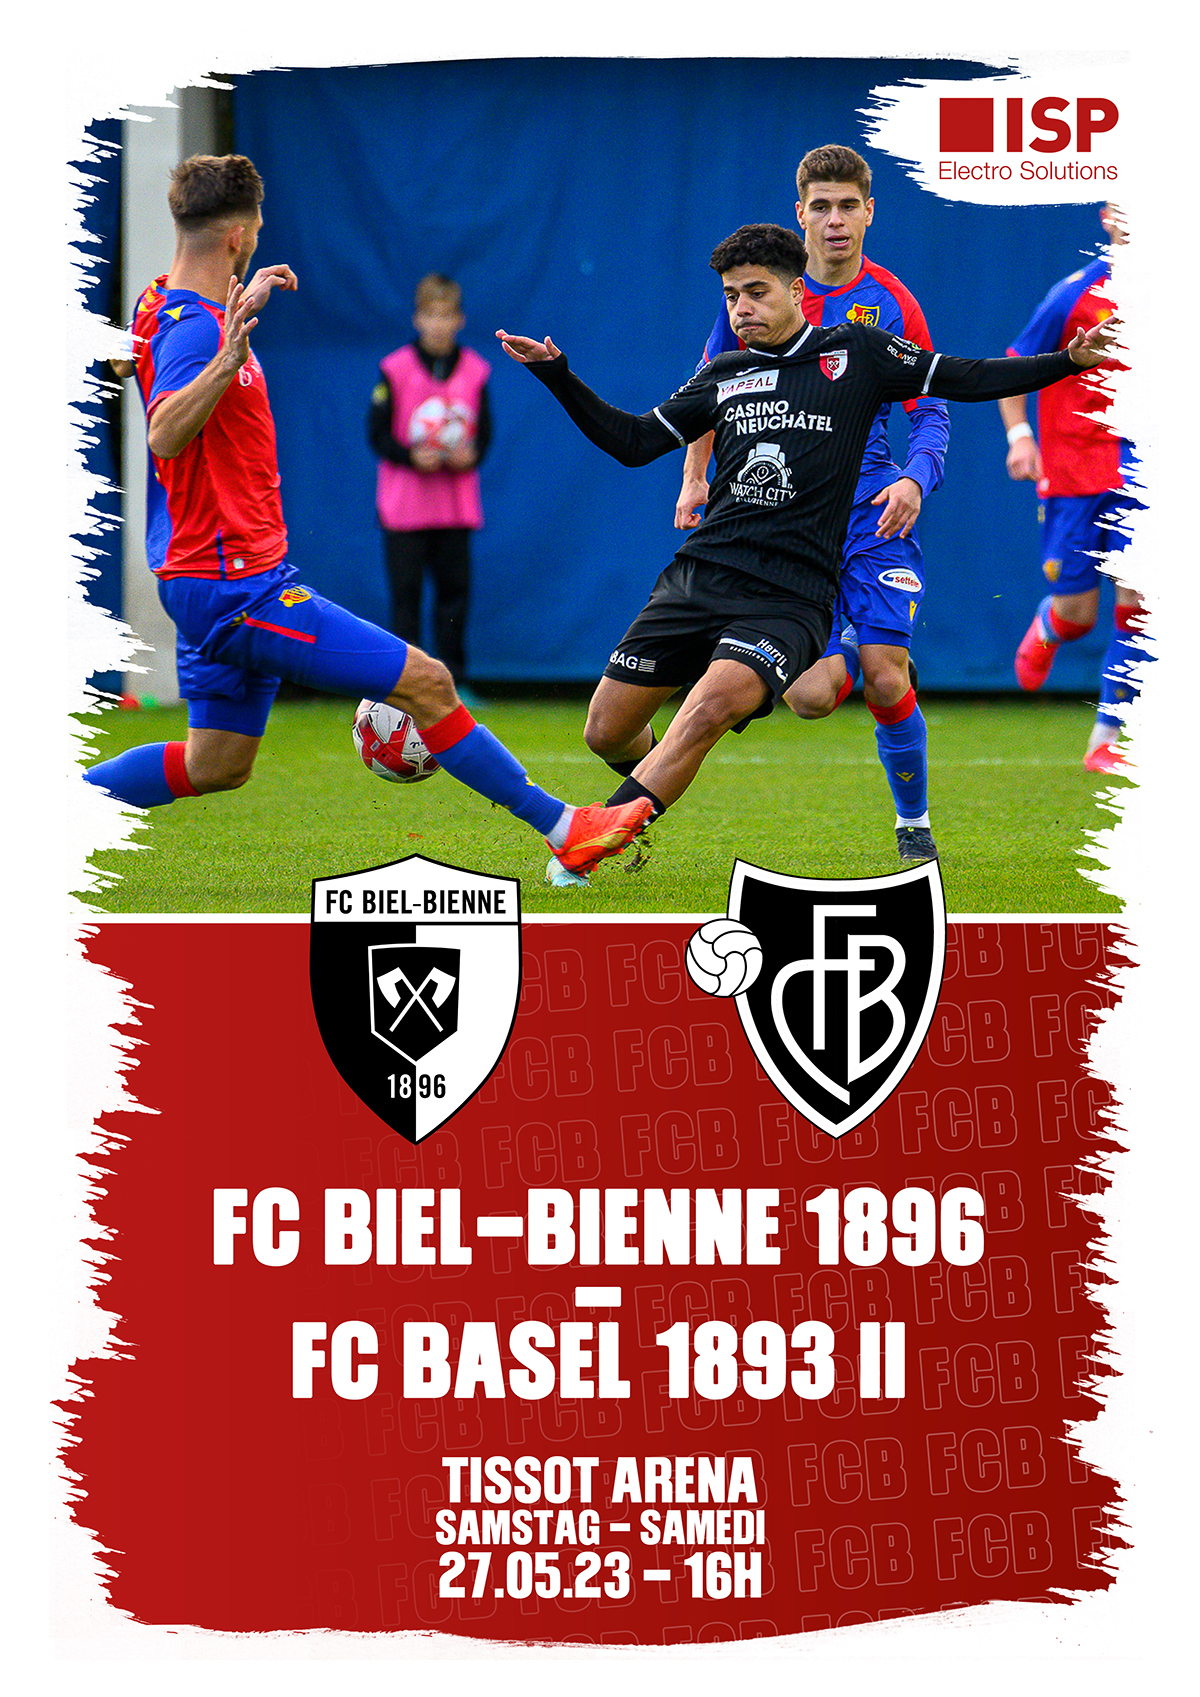 Herzlich willkommen dem FC Basel 1893 U21 und seinen mitgereisten Fans